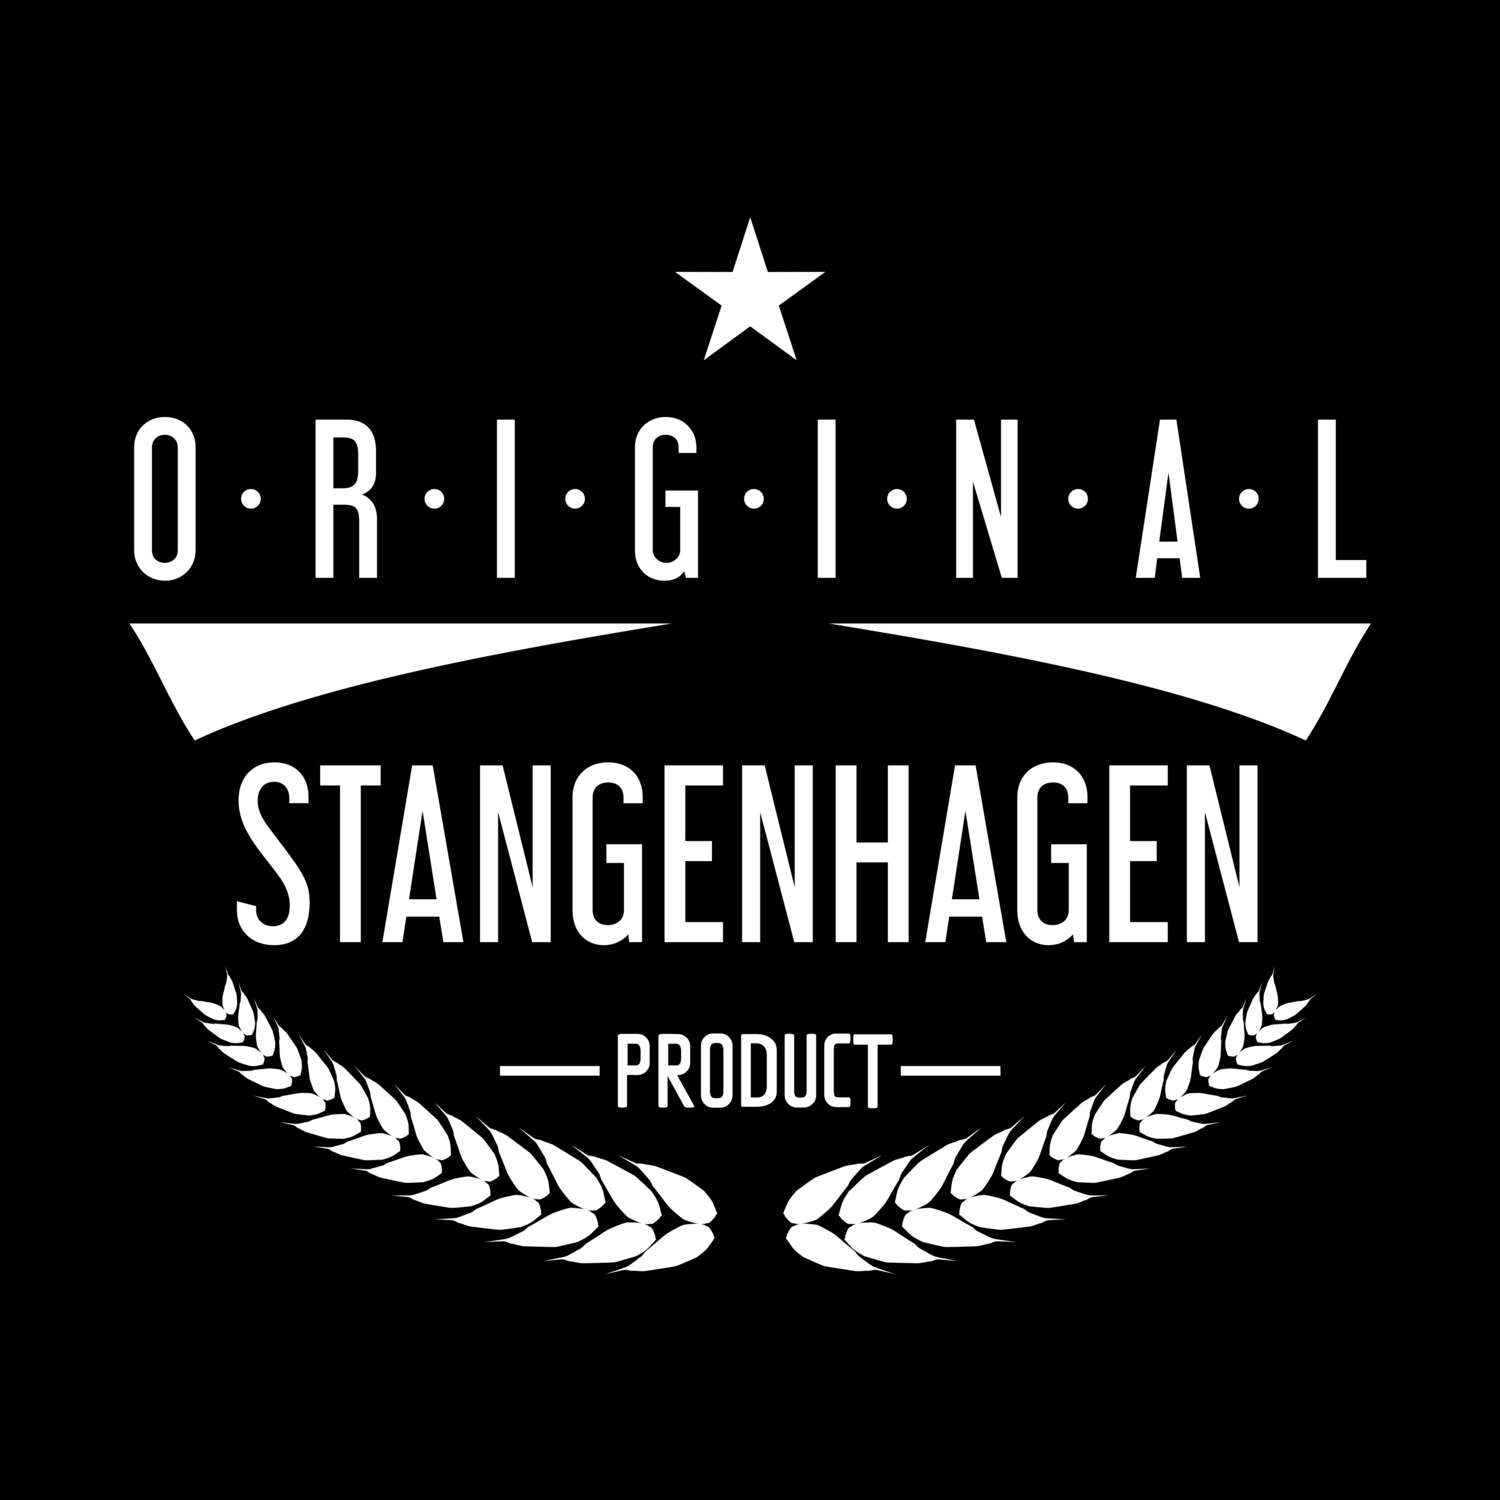 Stangenhagen T-Shirt »Original Product«